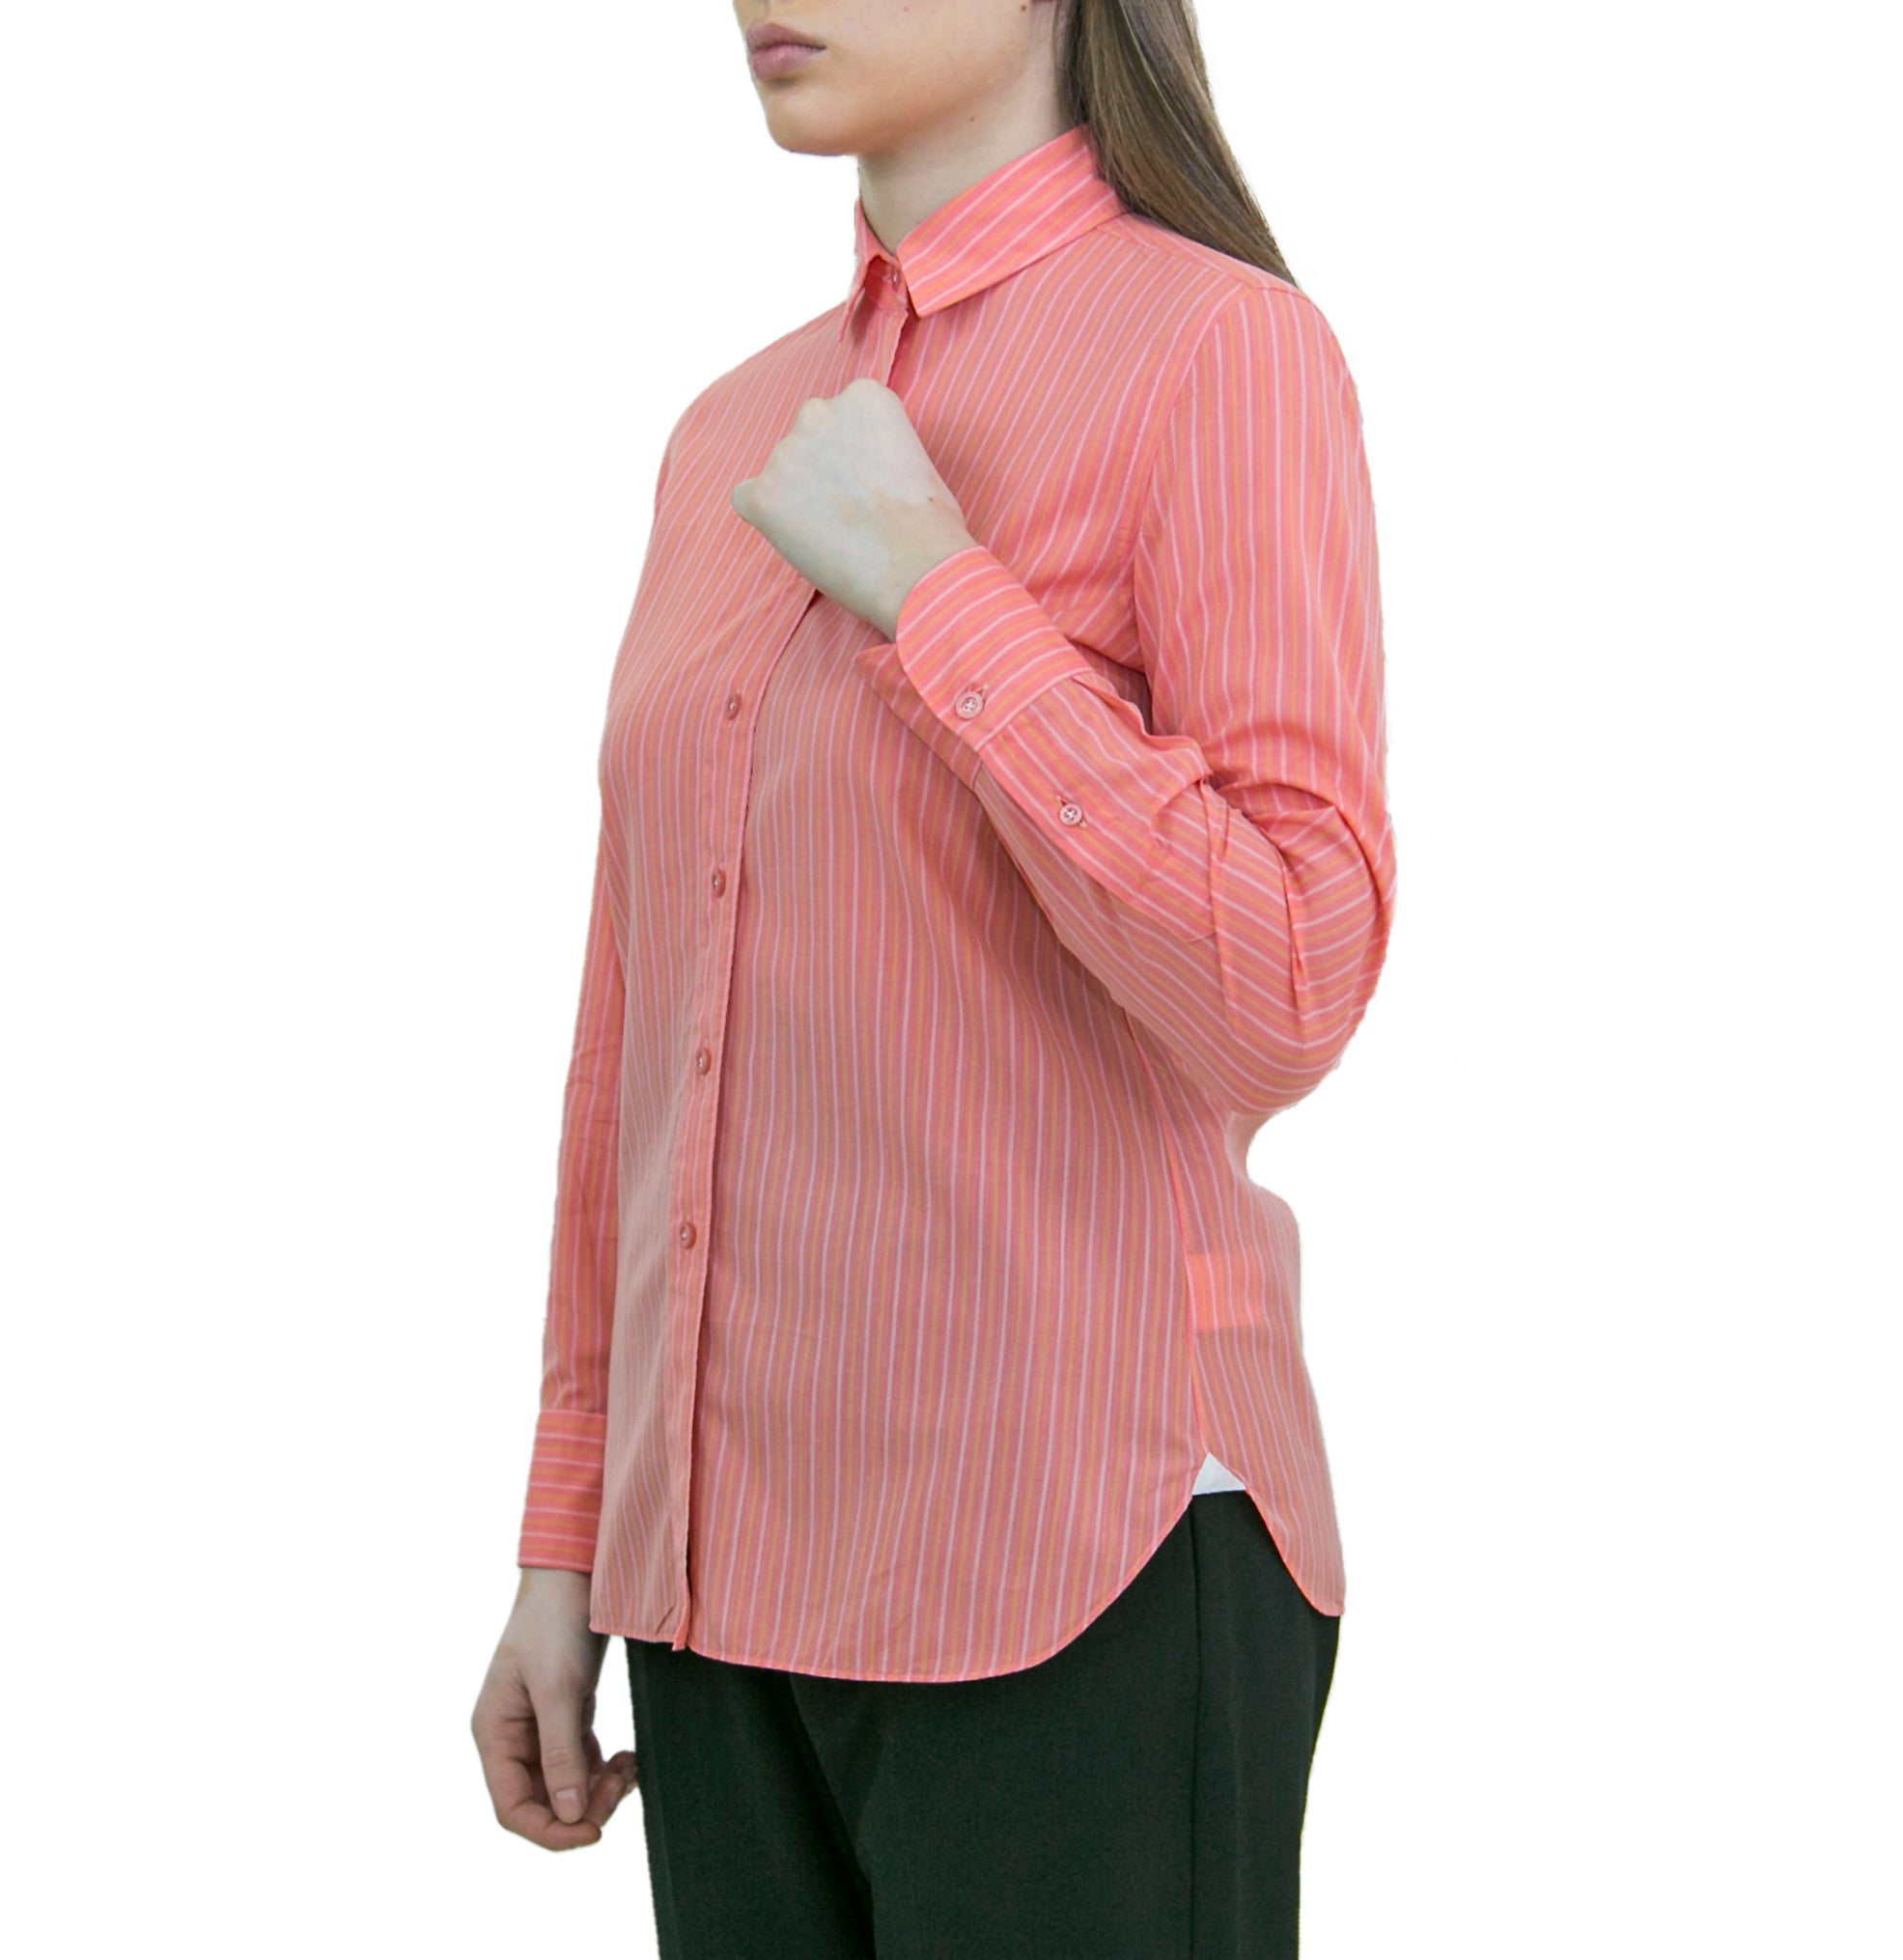 Ivana women's shirt "170 a due" pink striped bottom